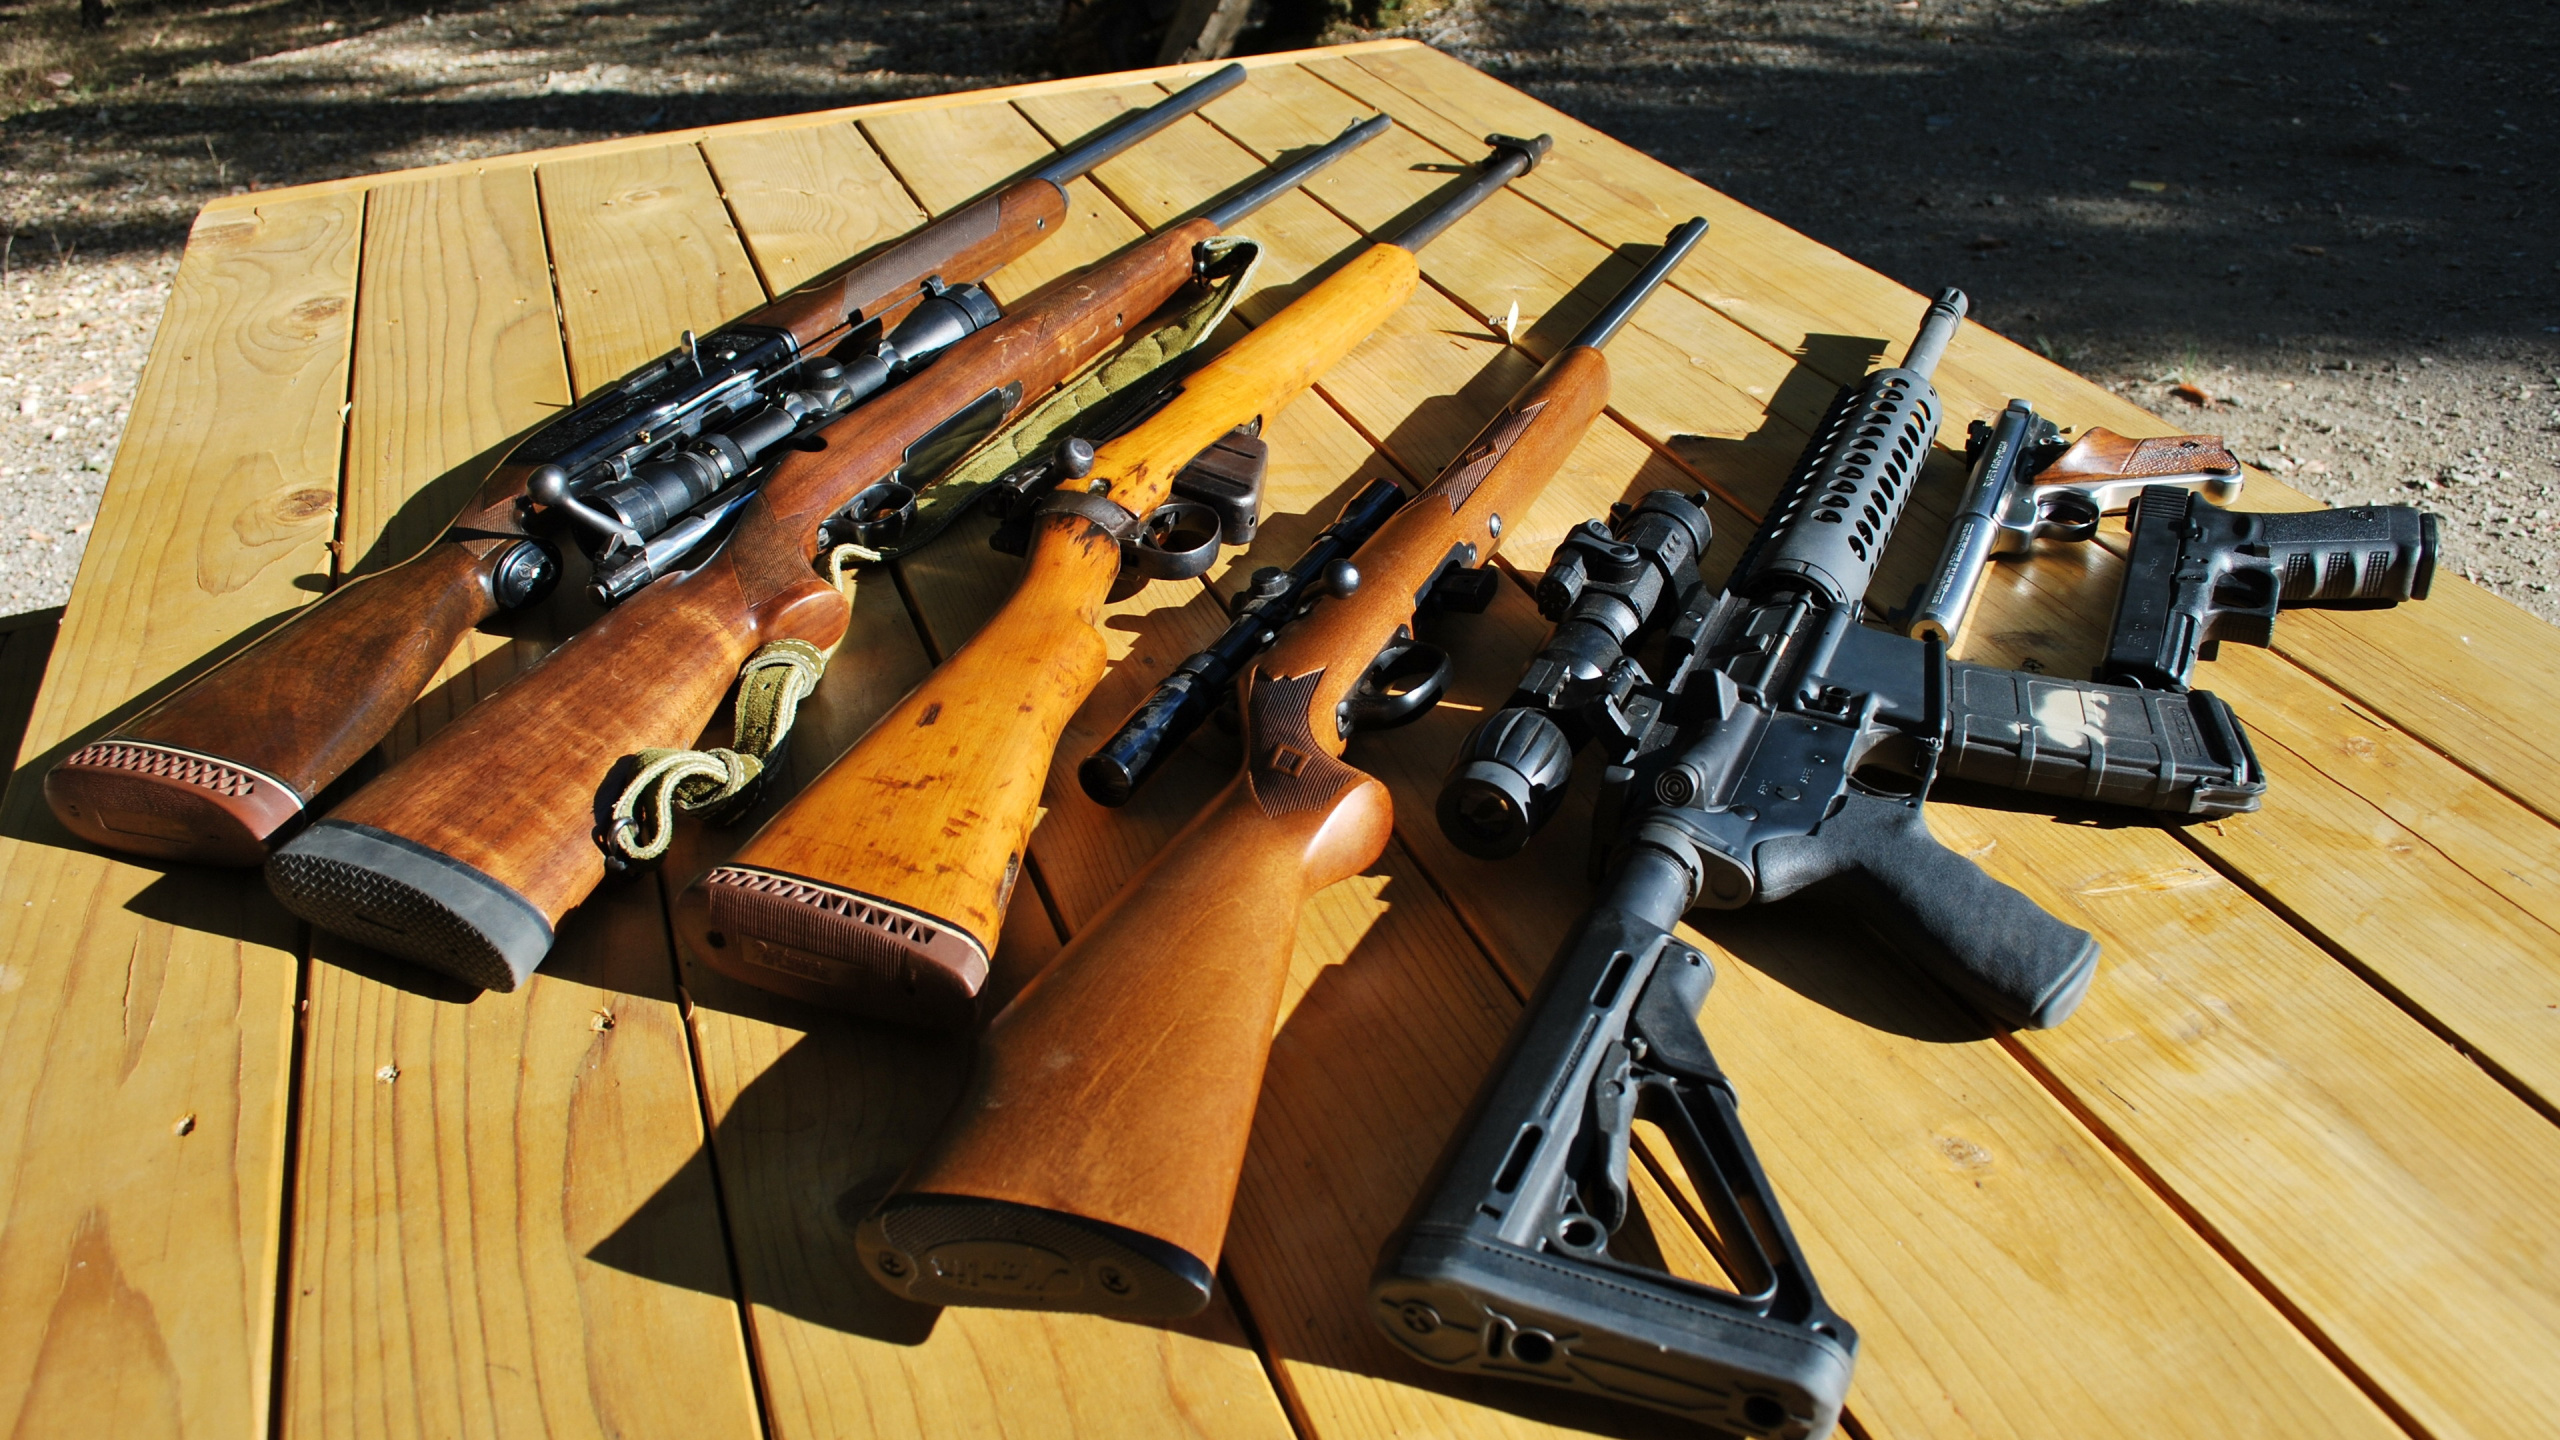 Arma, Pistola de Aire, Pistola de Airsoft, Rifle, Arma Civil. Wallpaper in 2560x1440 Resolution